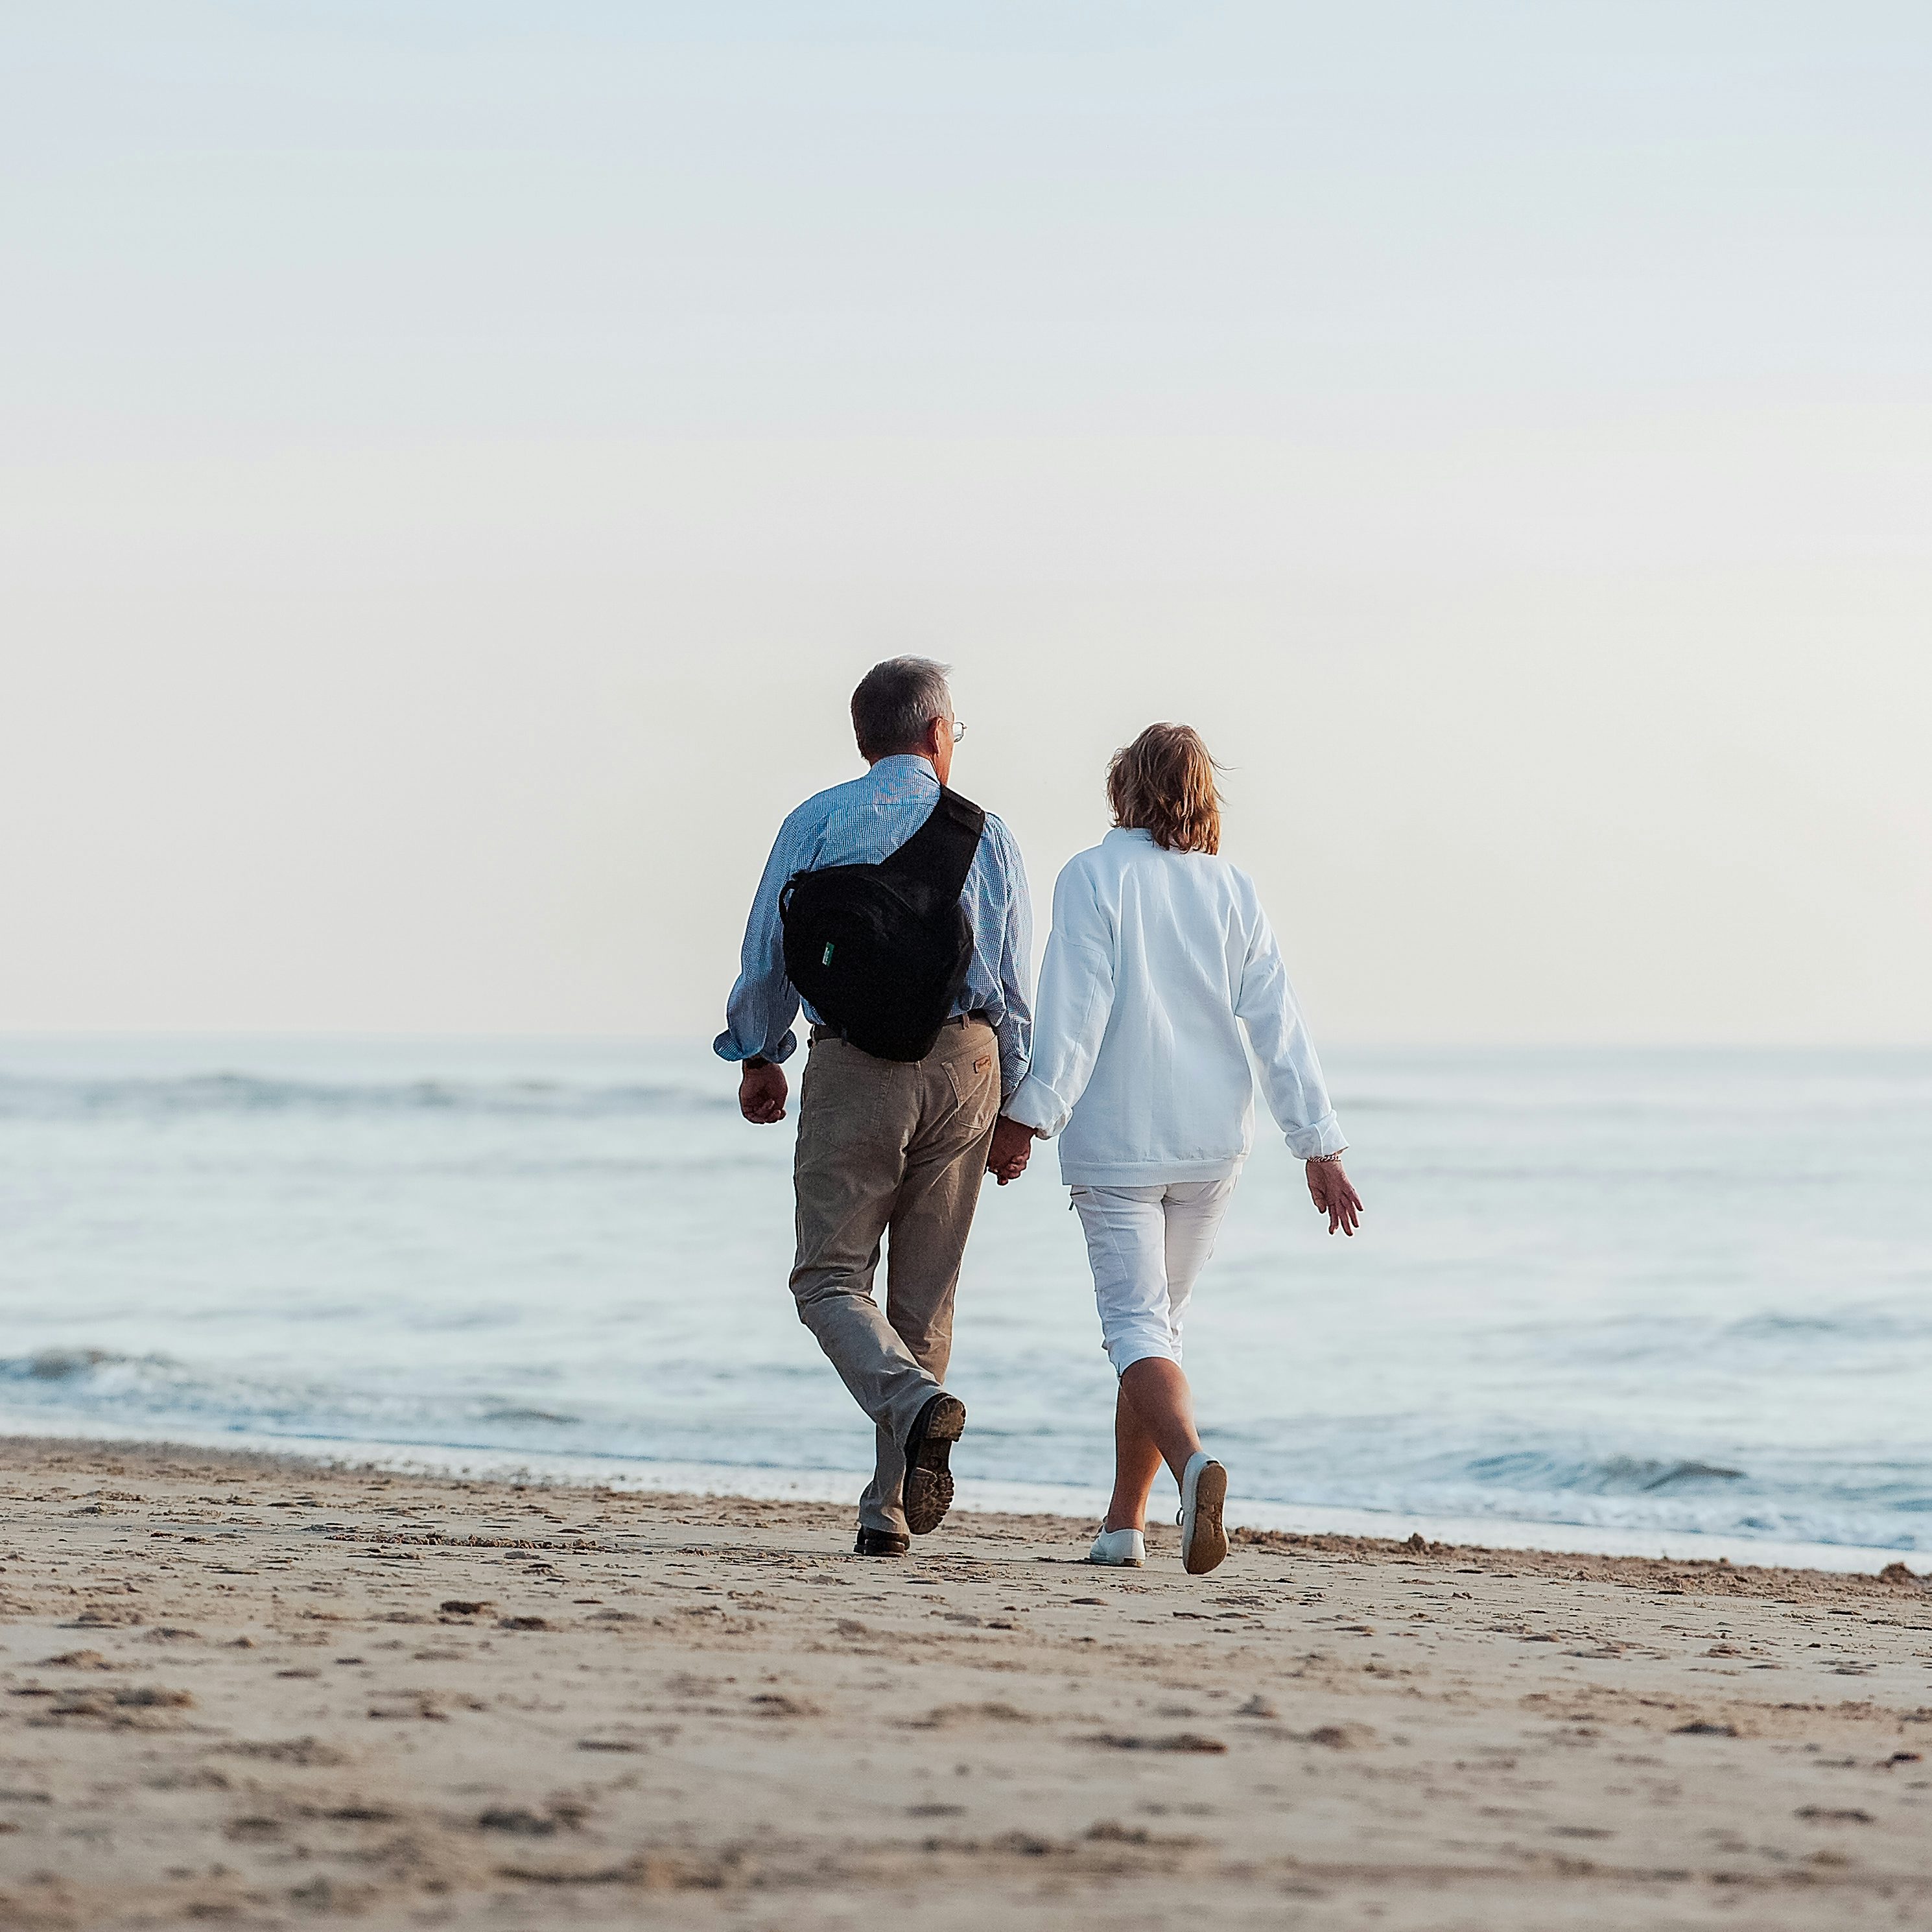 Betriebliche Altersvorsorge bei Rädlinger, Paar geht am Strand spazieren